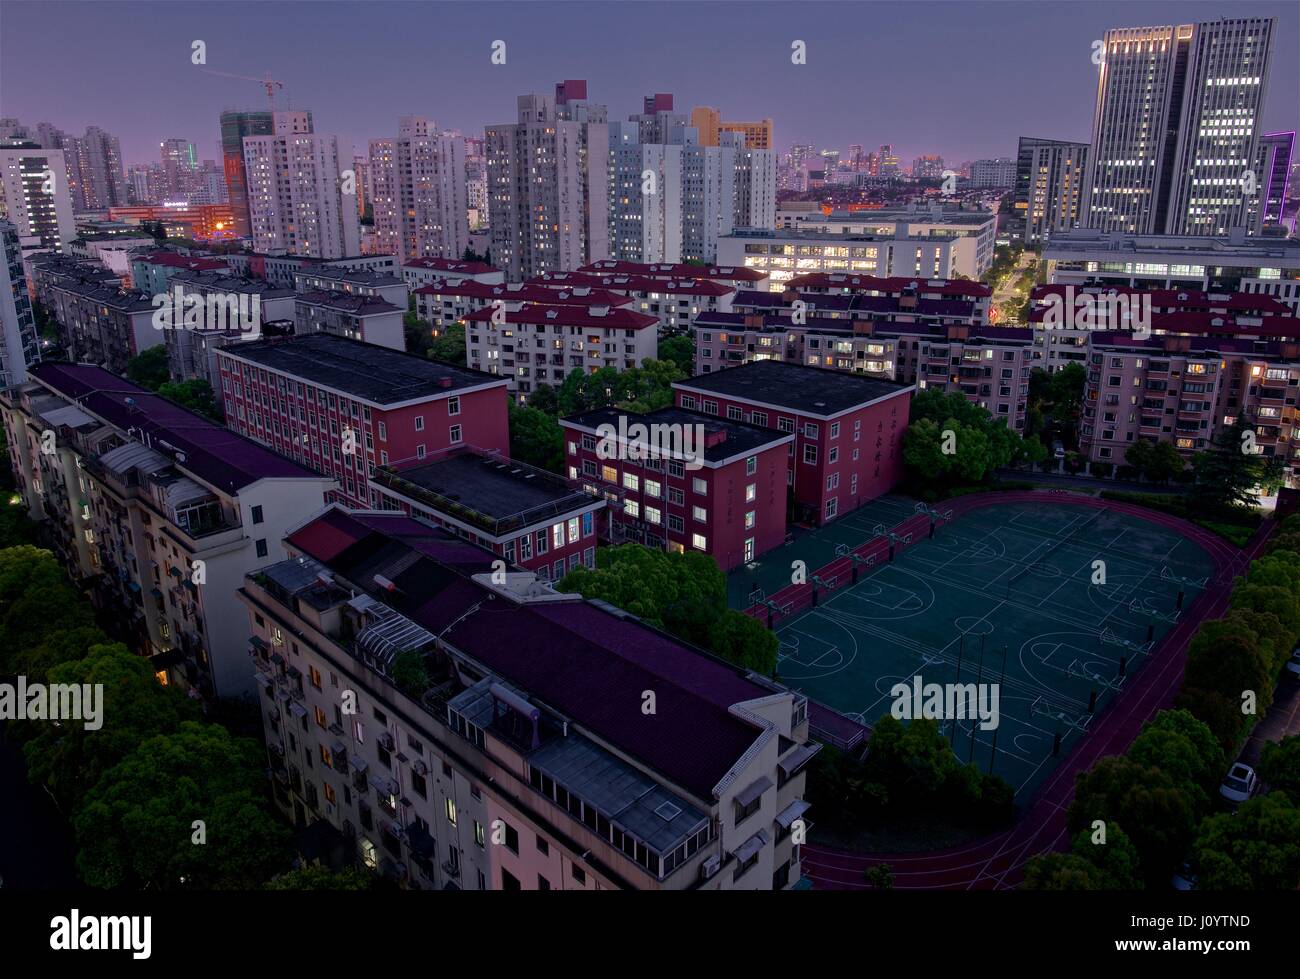 Urbano composto residenziale di Shanghai - la stessa immagine disponibile per il mezzogiorno, pomeriggio, sera e notte Foto Stock